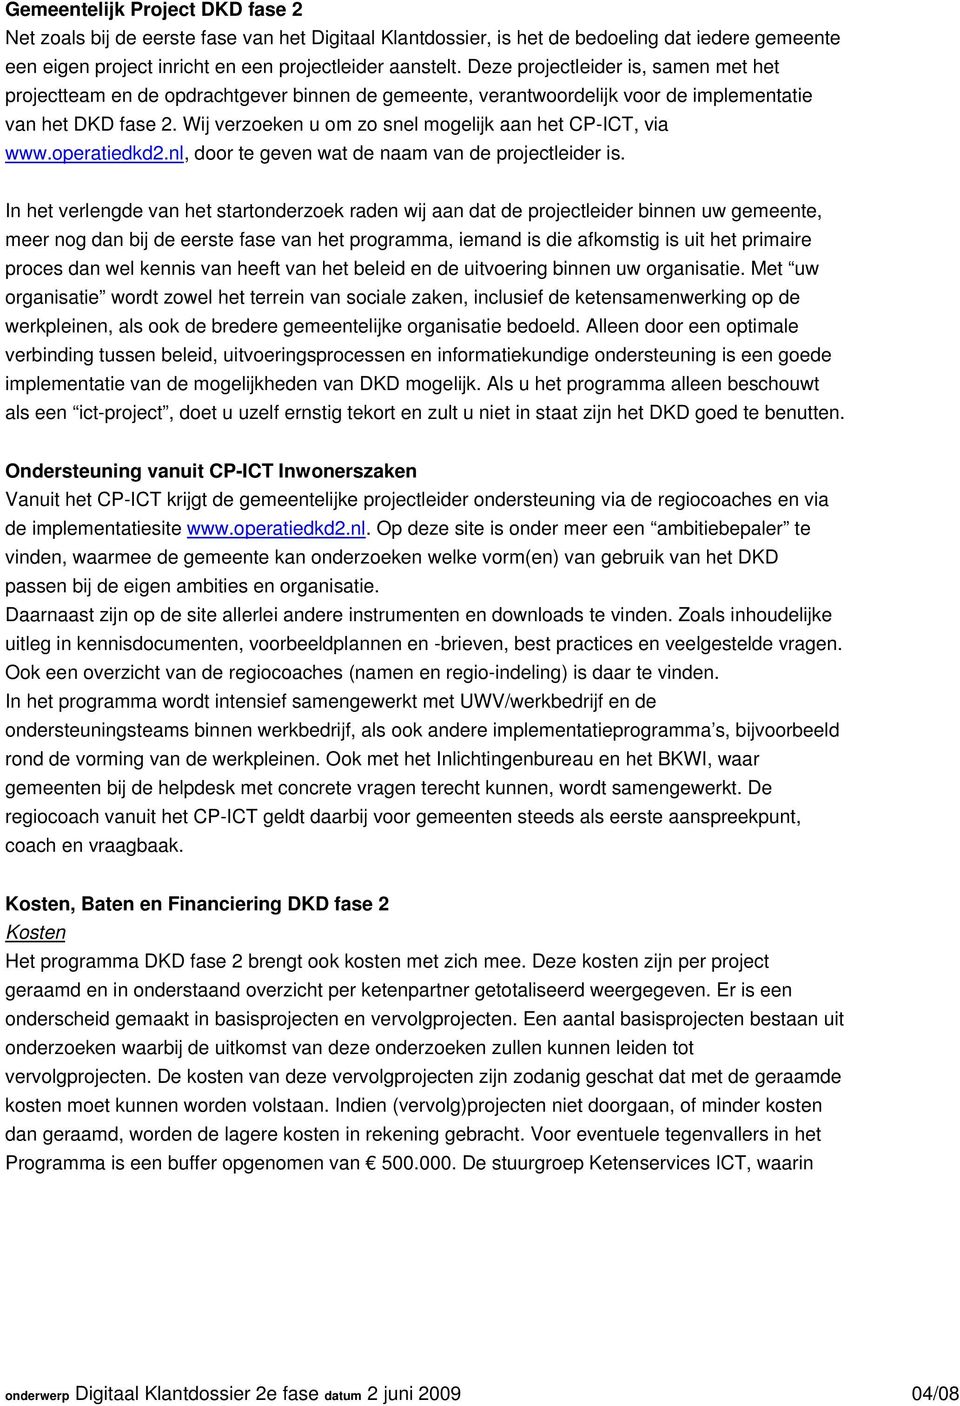 Wij verzoeken u om zo snel mogelijk aan het CP-ICT, via www.operatiedkd2.nl, door te geven wat de naam van de projectleider is.